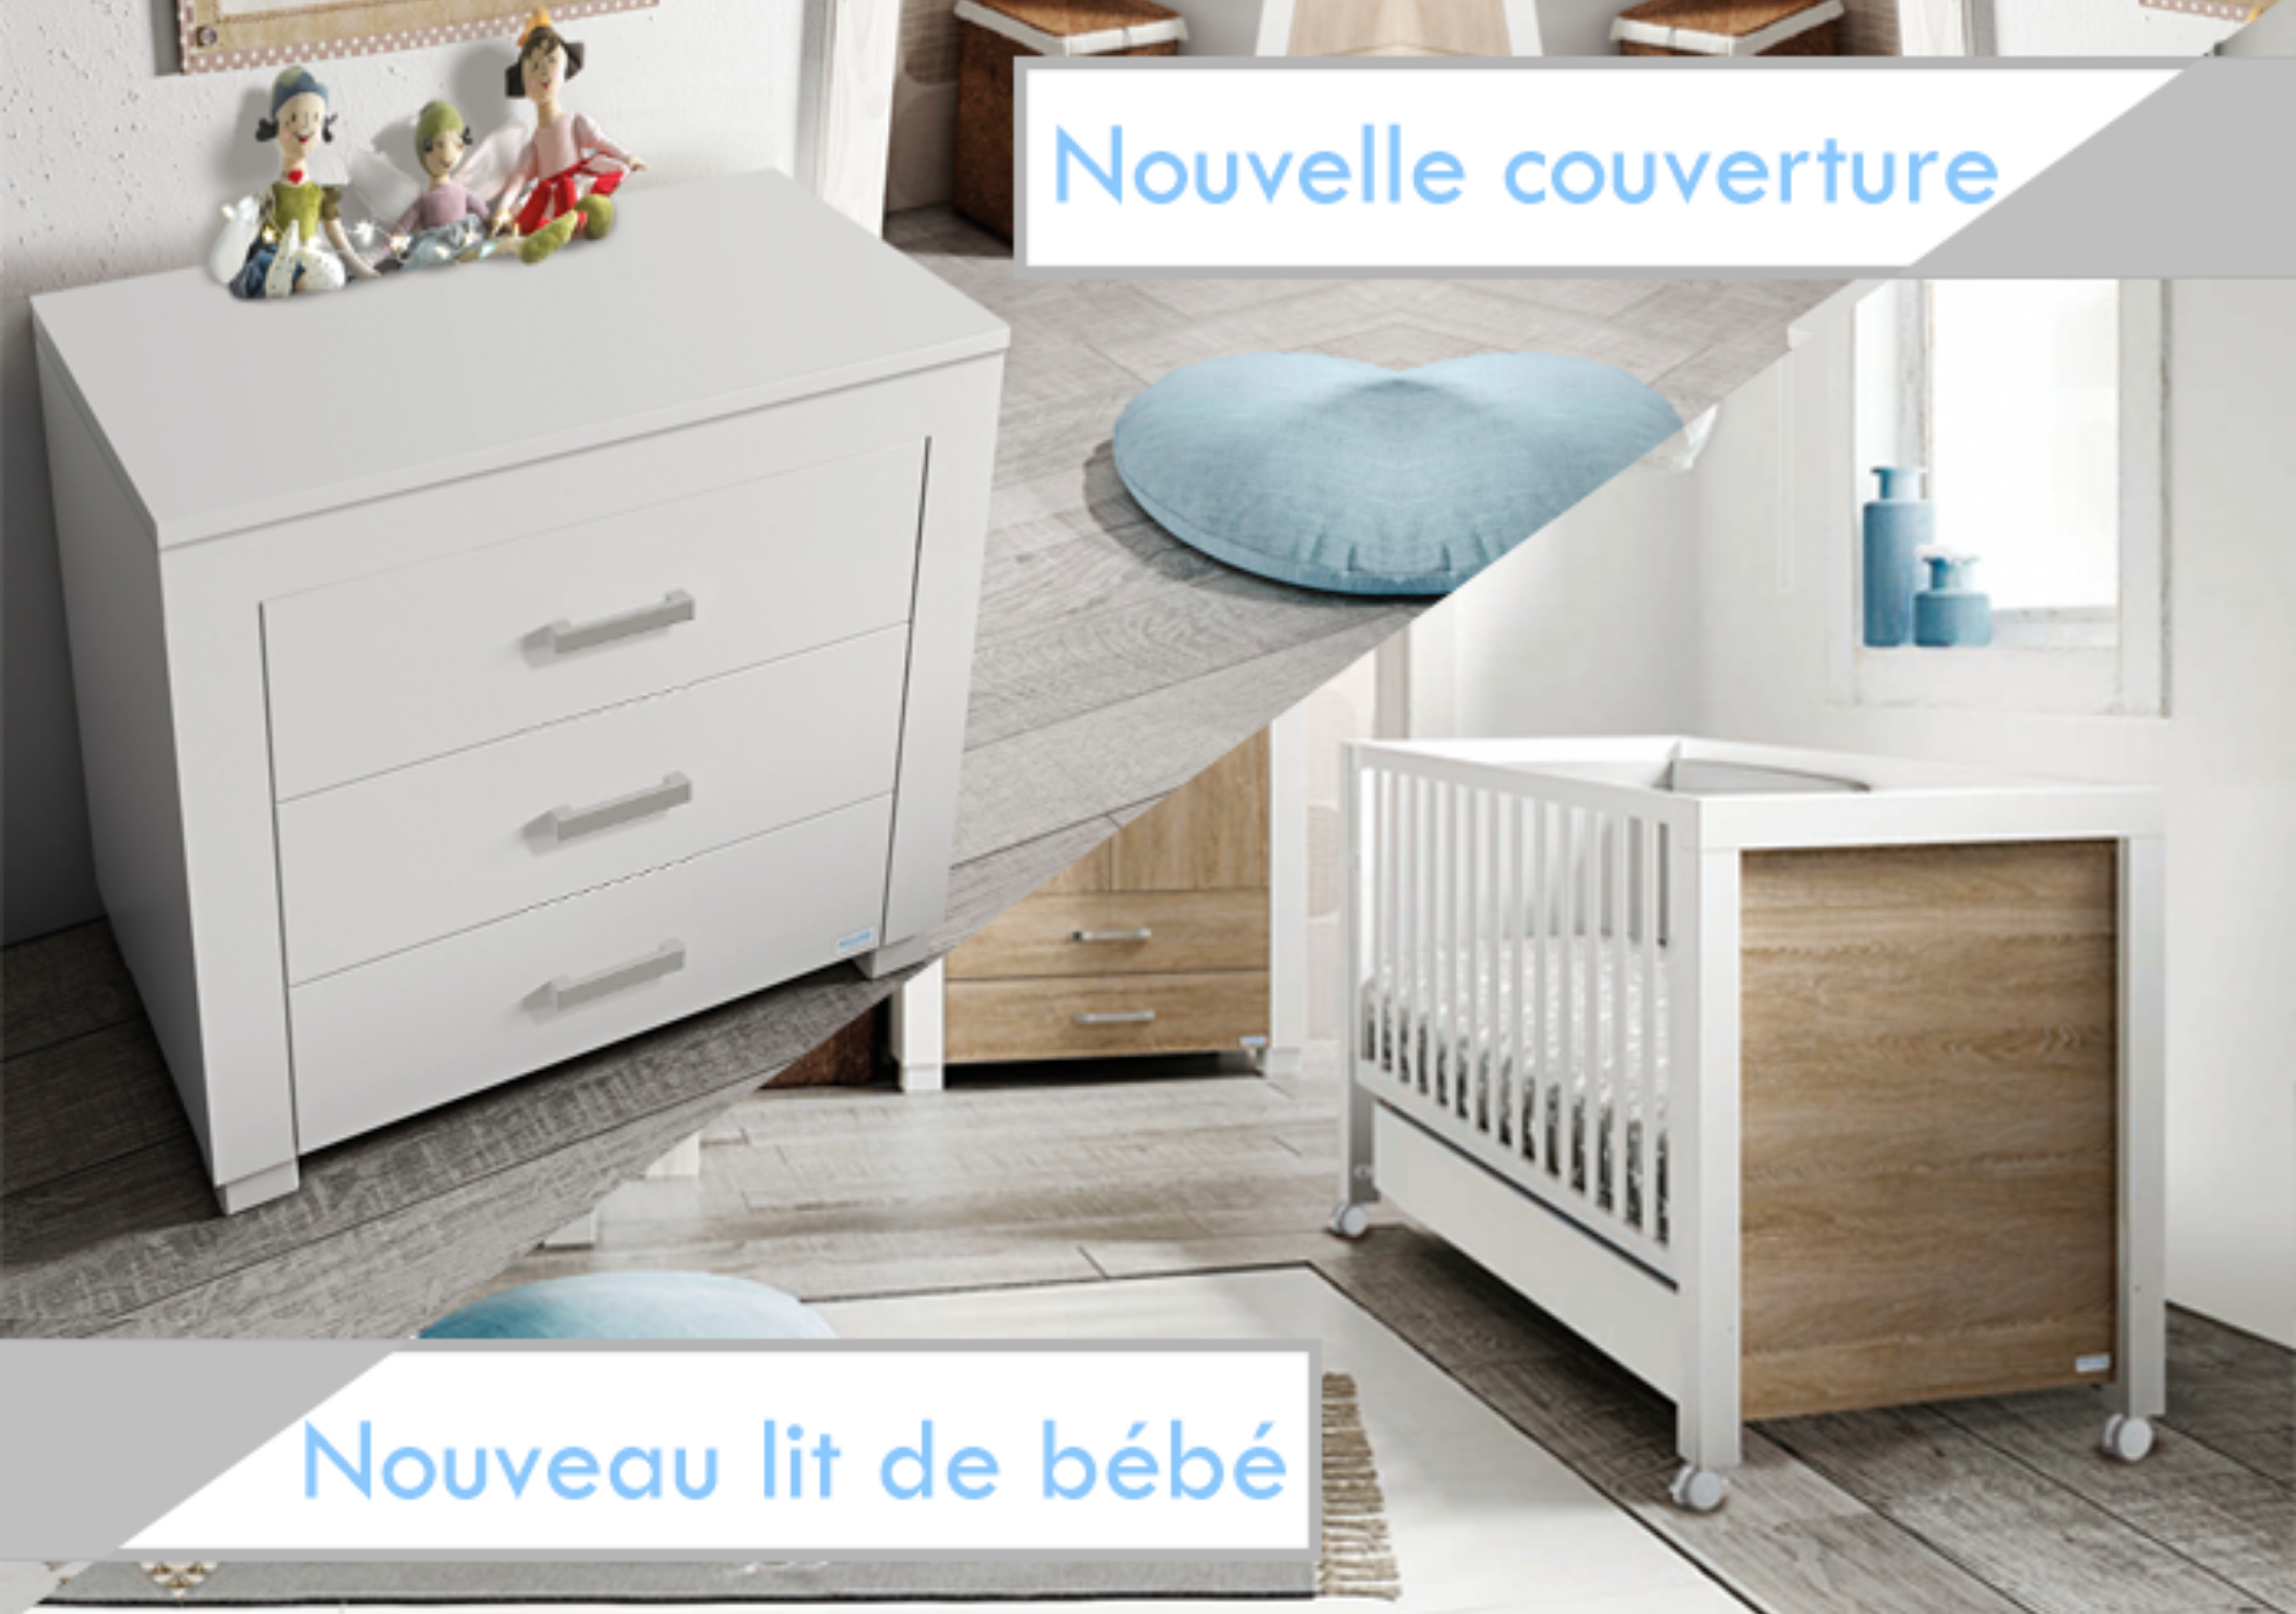 Collection DUKE: Nouvelle lit de bébé et nouvelle couverture 8571 Micuna tienda online